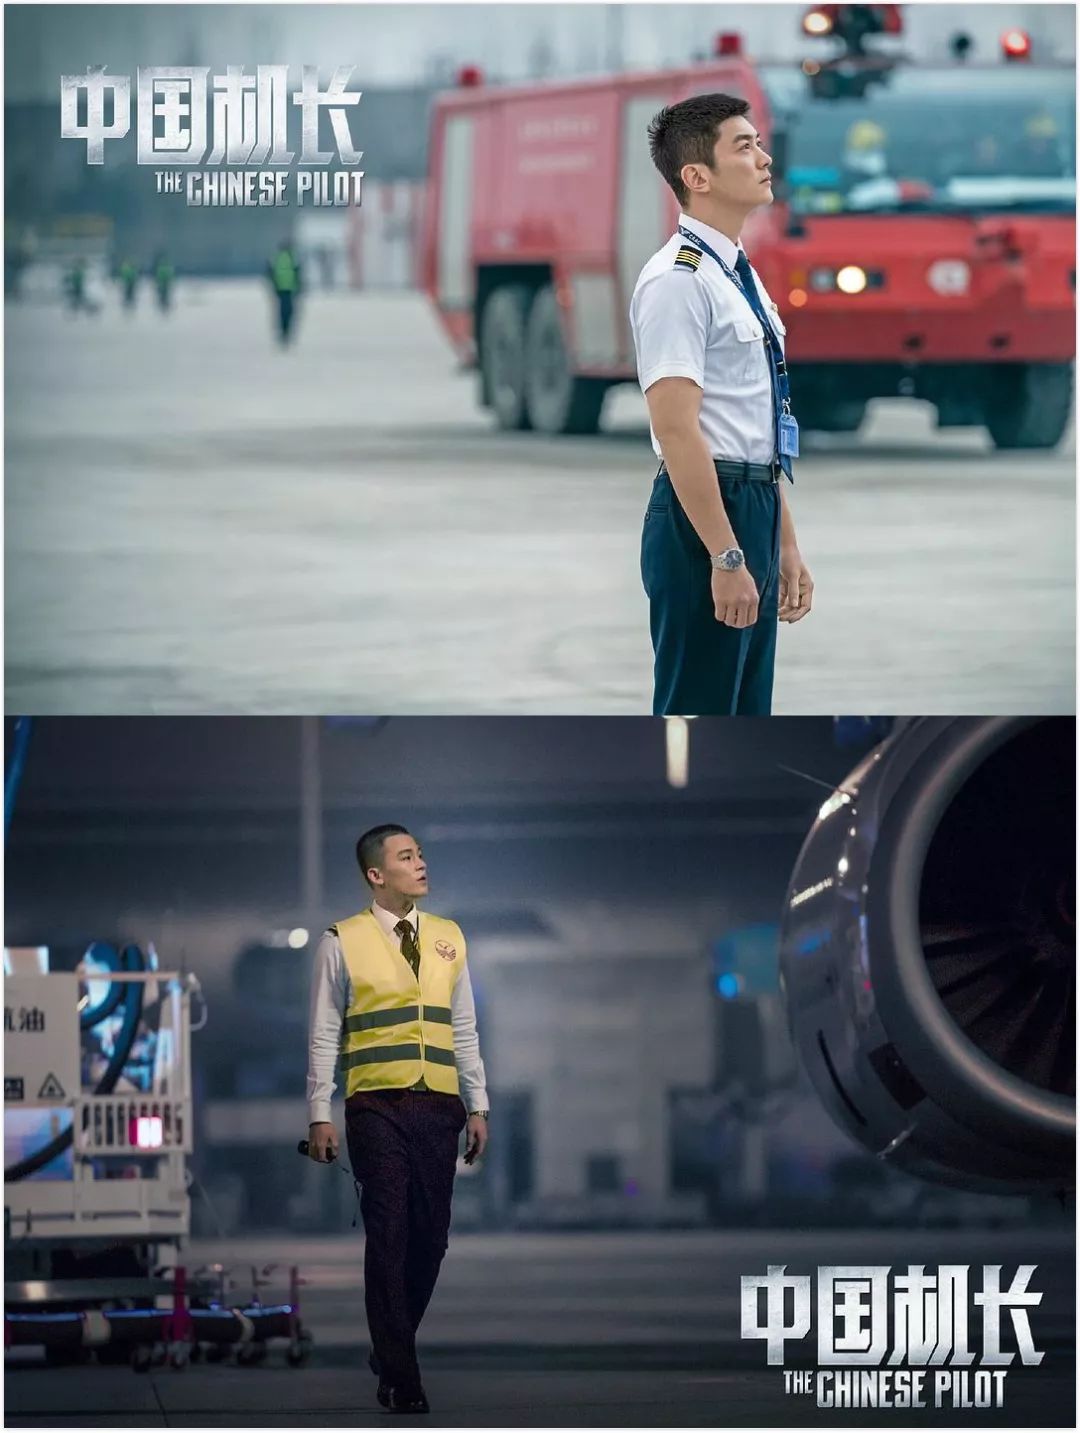  电影《中国机长》剧照，第二机长杜江，副驾驶欧豪